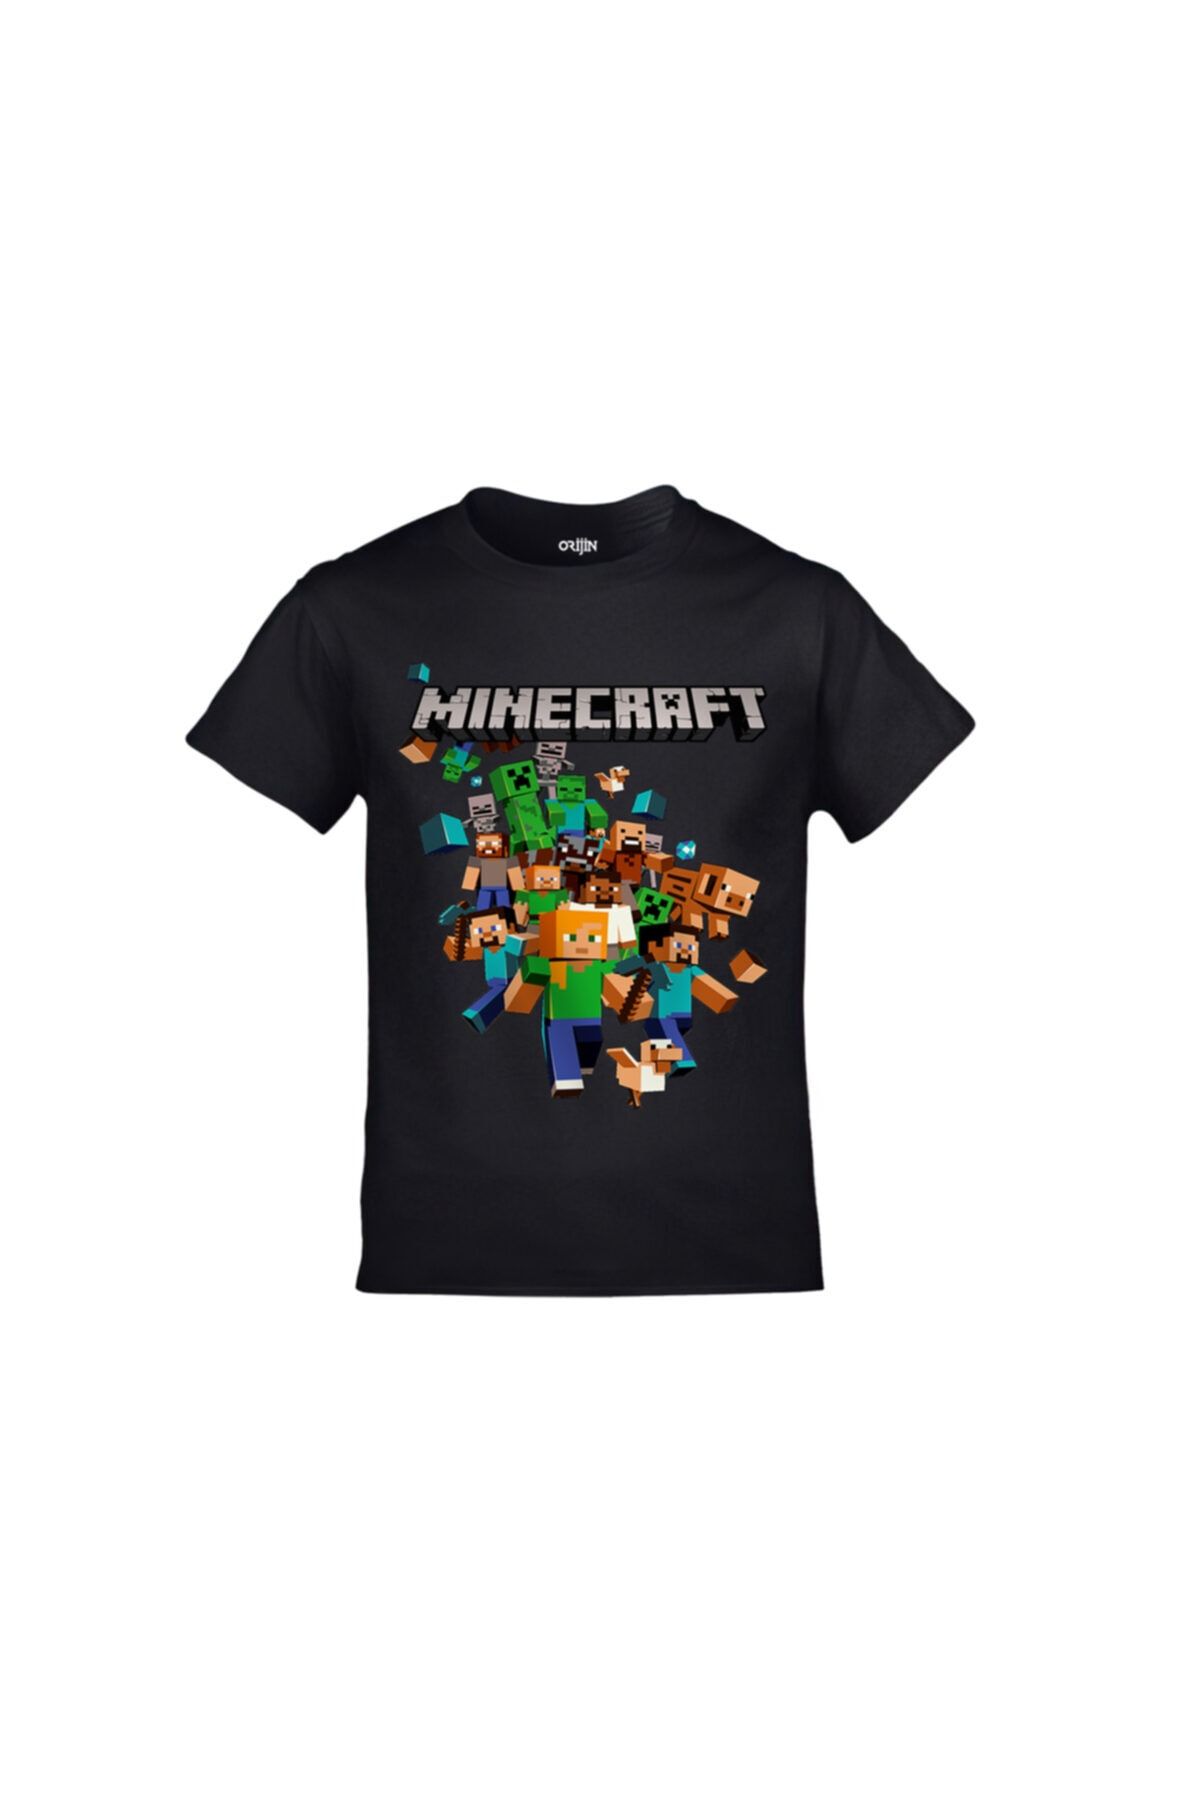 Orijin Tekstil Minecraft Baskılı Oyun Çocuk Tshirt